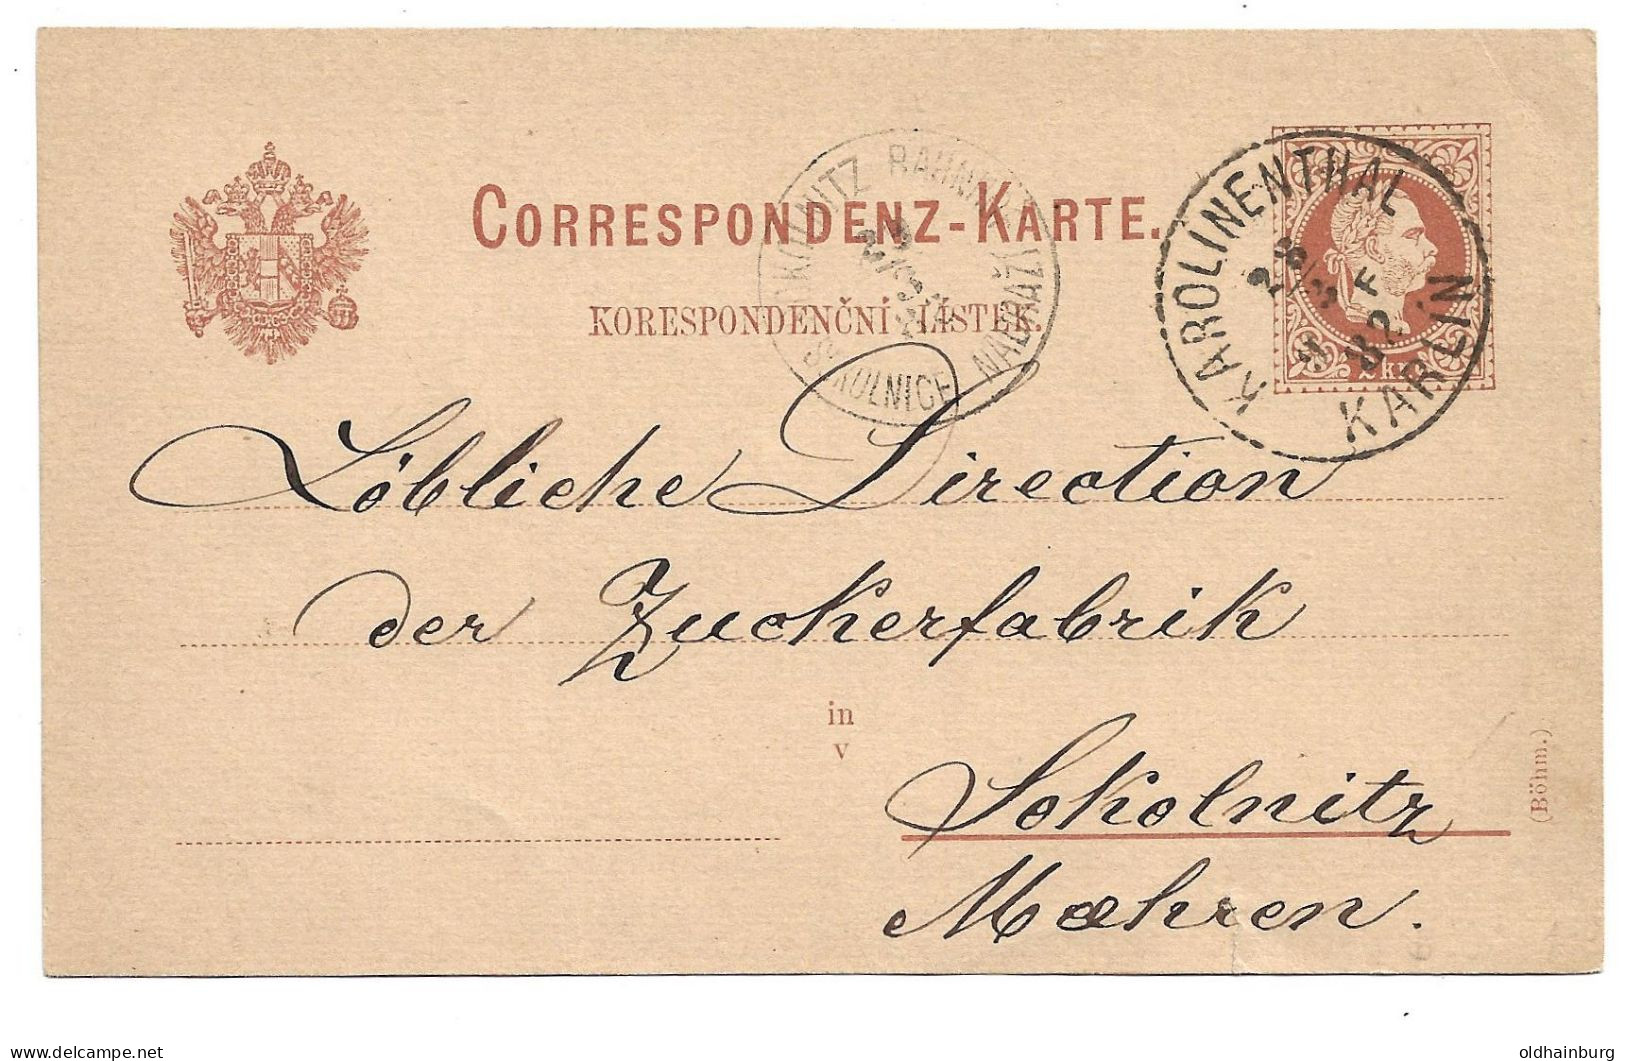 0152i: Altösterreichisches Gebiet Böhmen, Karolinenthal, Postkarte 1889 - Covers